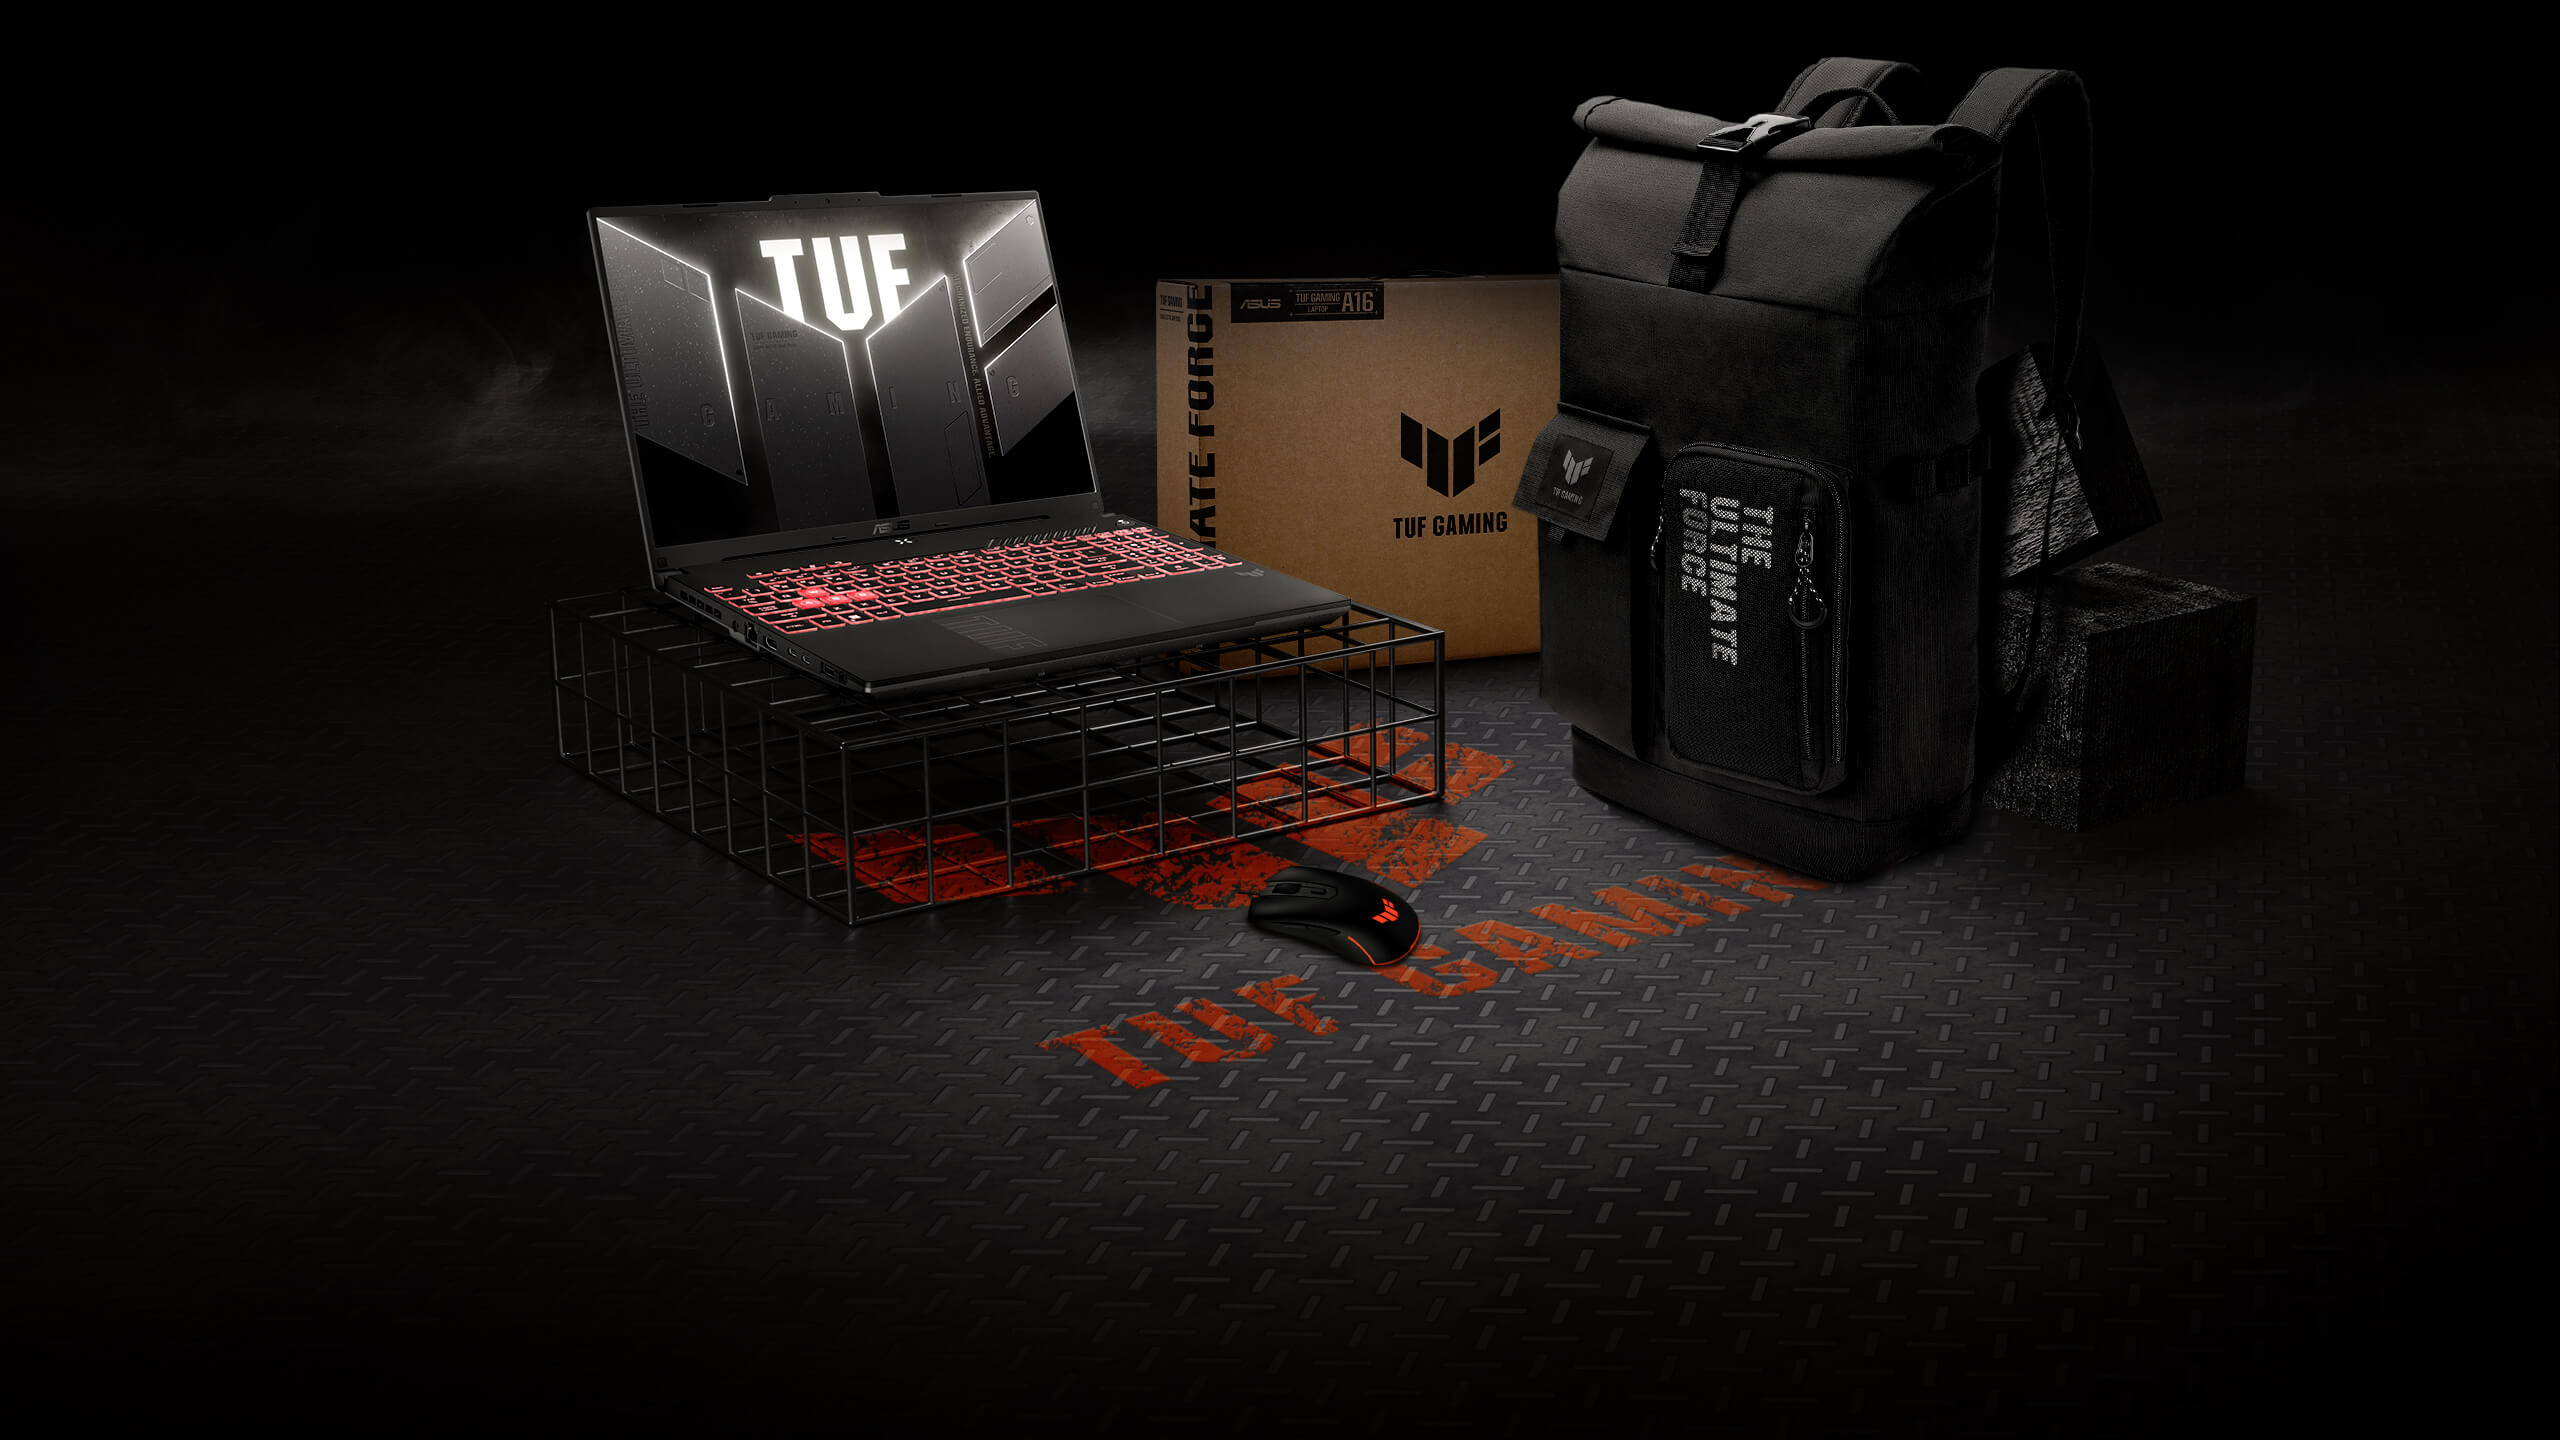 Le TUF Gaming A16 sur un cadre métallique, avec une souris TUF Gaming et un sac à dos TUF Gaming disposés à proximité.